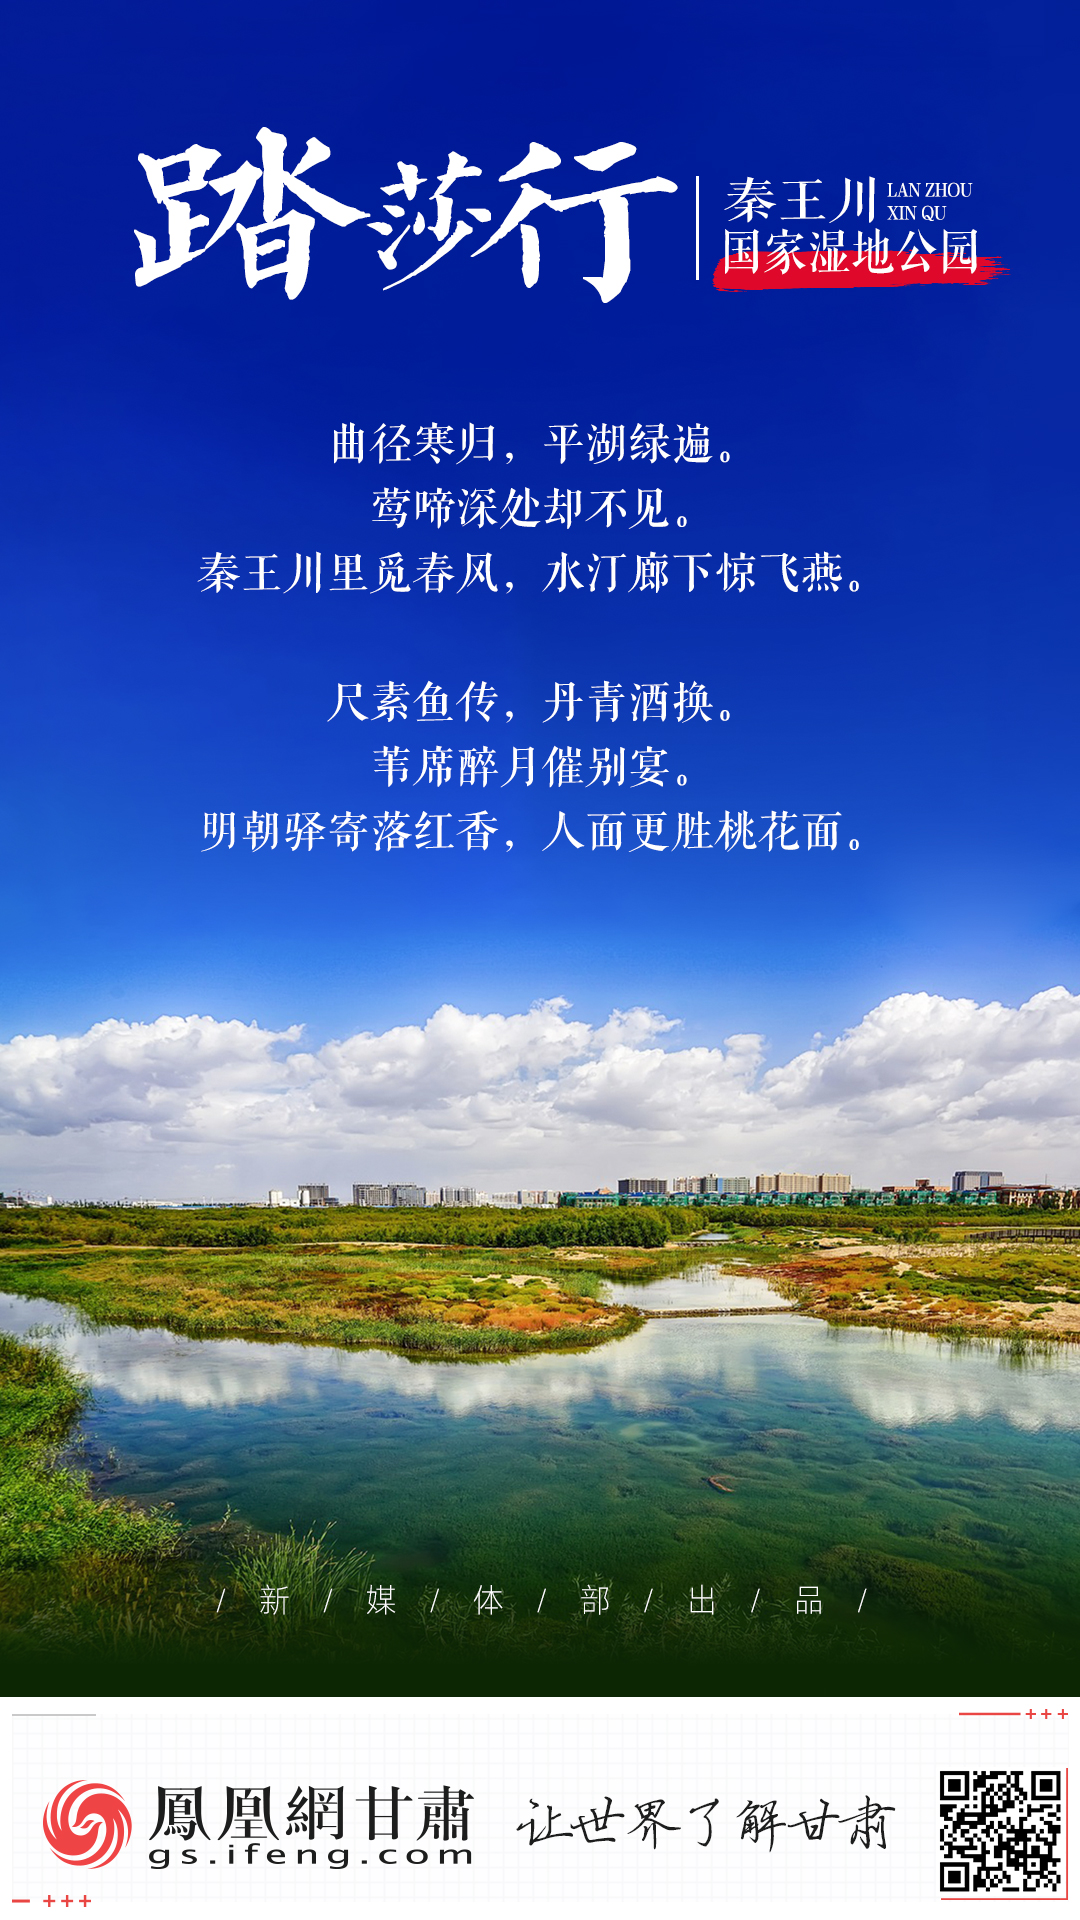 【凤眼看新区】踏莎行·秦王川国家湿地公园